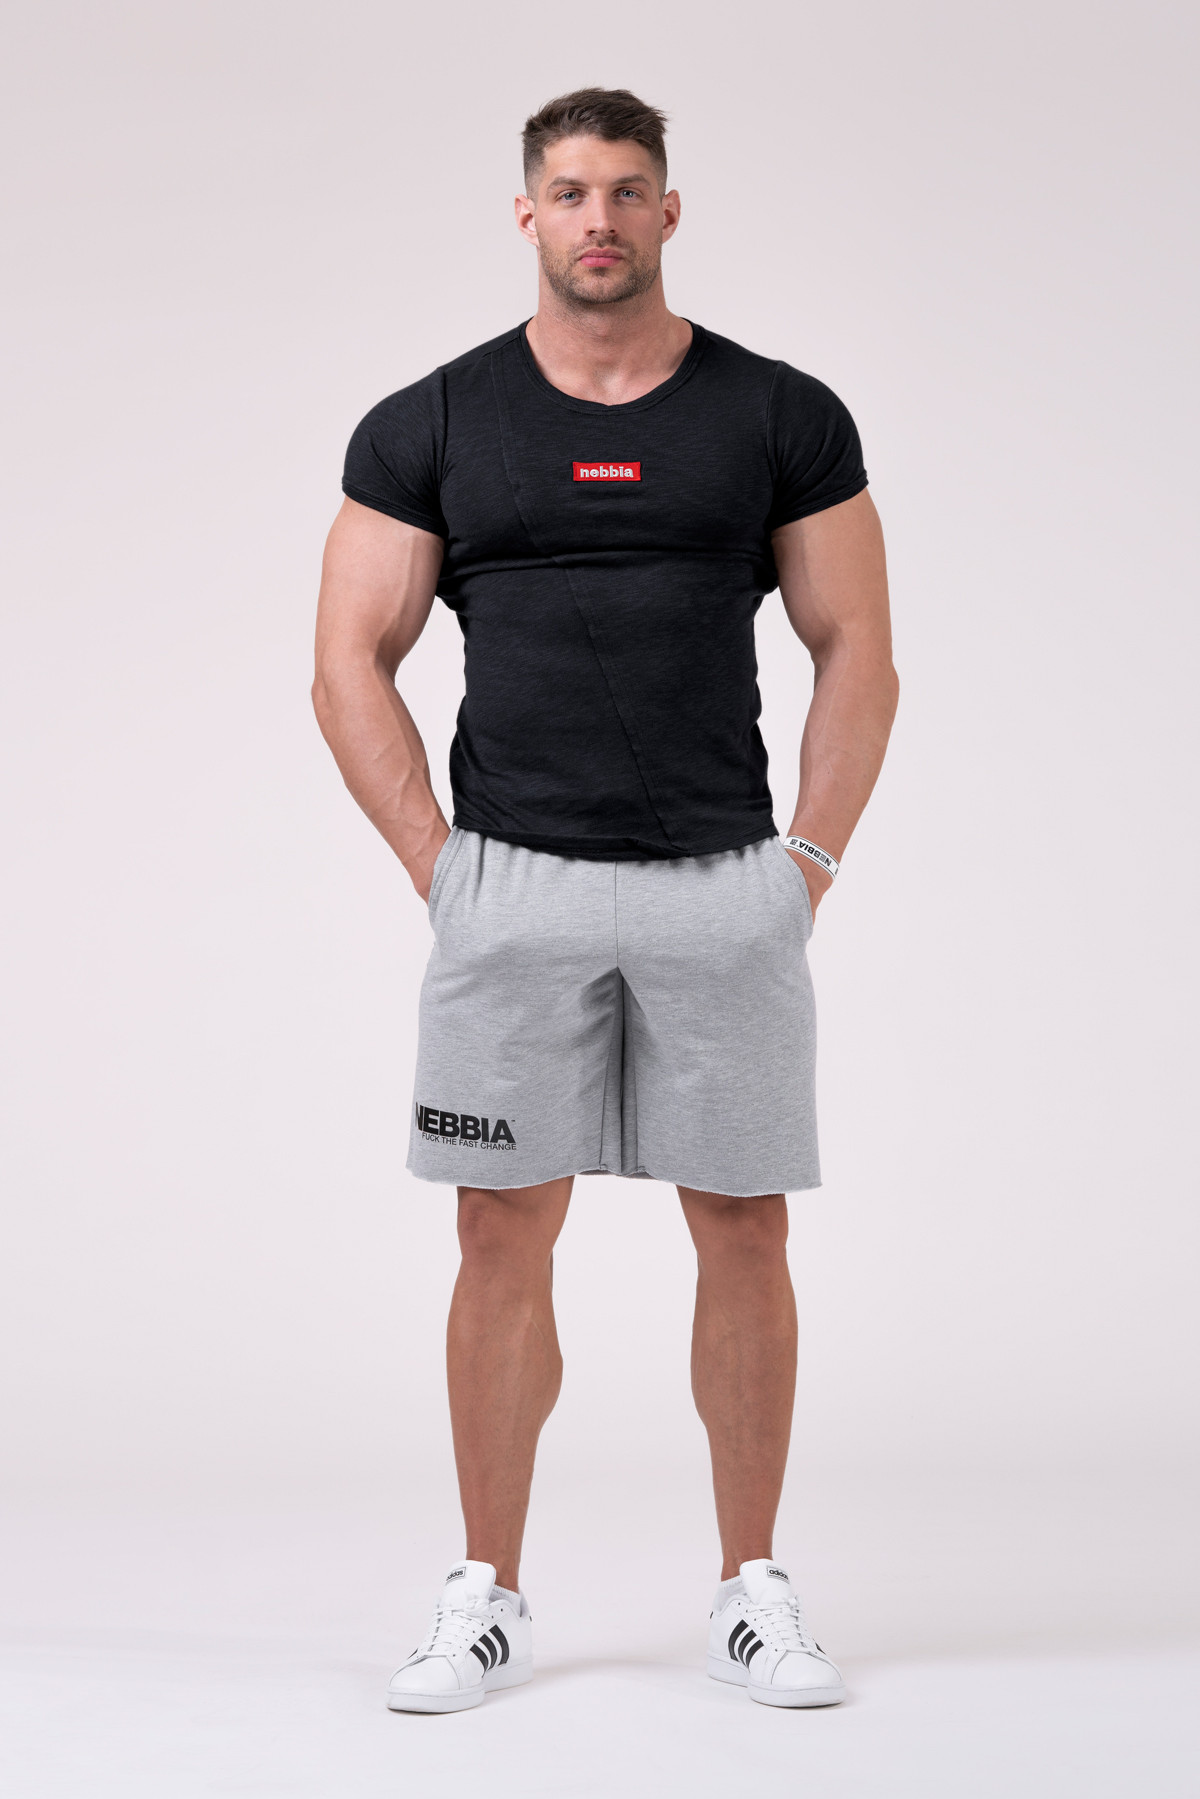 Legday Hero shorts | NEBBIA